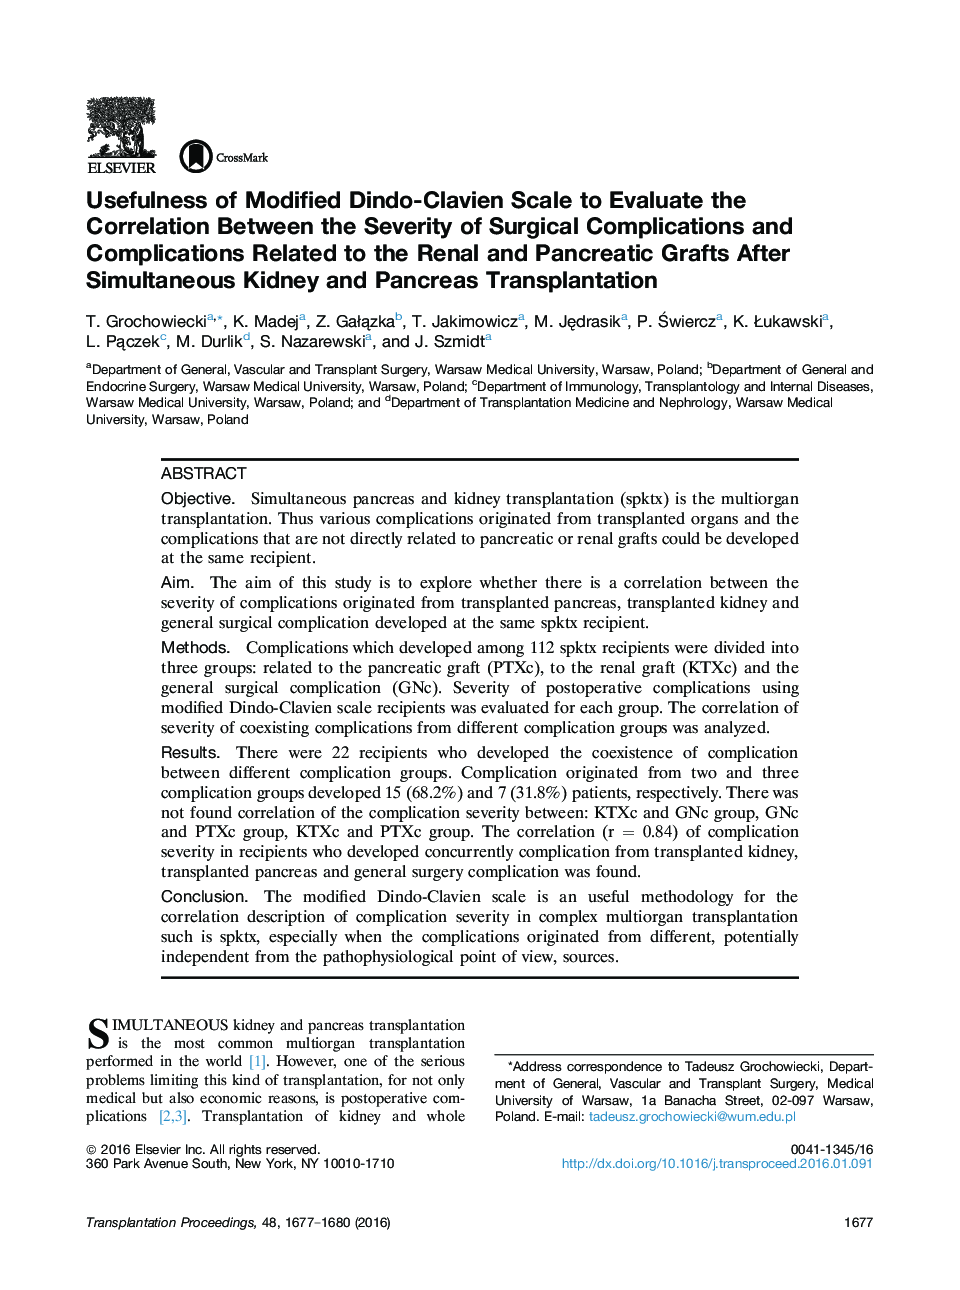 سودمندی استفاده از مقیاس اصلاح شده Dindo-Clavien برای بررسی ارتباط بین شدت عوارض جراحی و عوارض مرتبط با پیوند کلیه و پانکراس پس از پیوند همزمان کلیه و پانکراس 